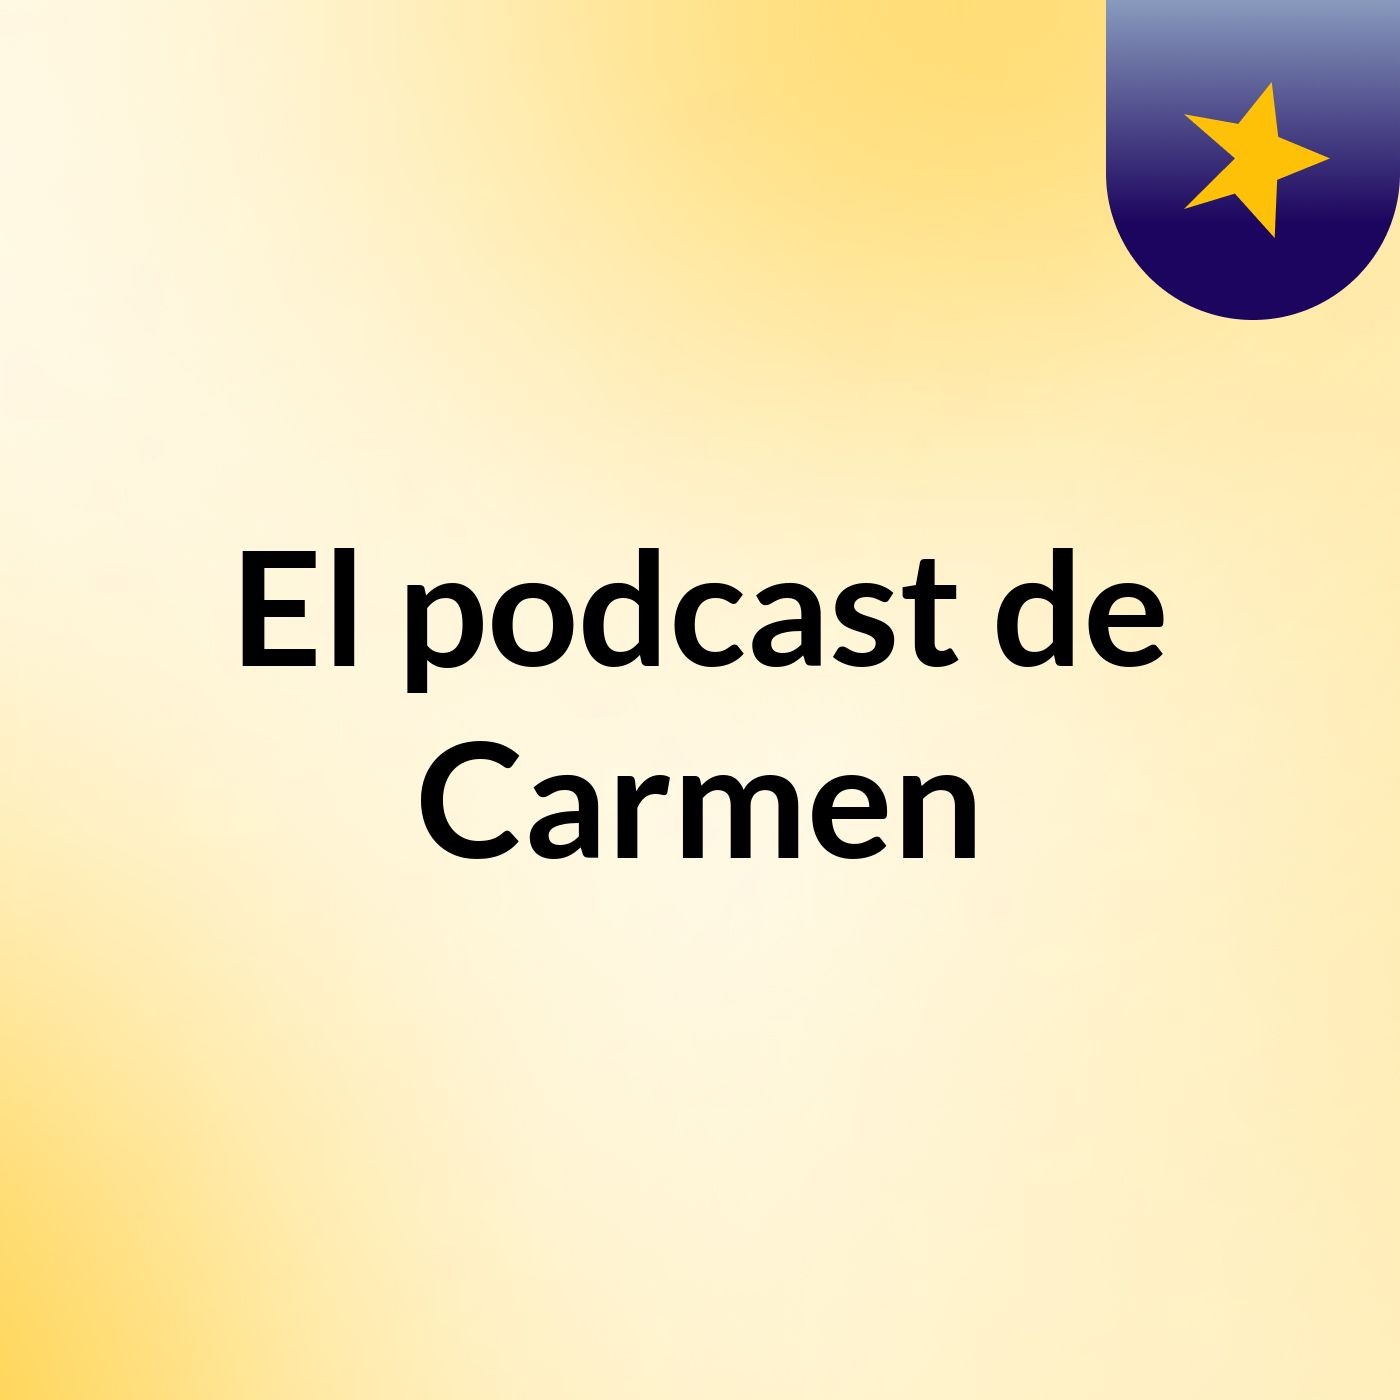 El podcast de Carmen